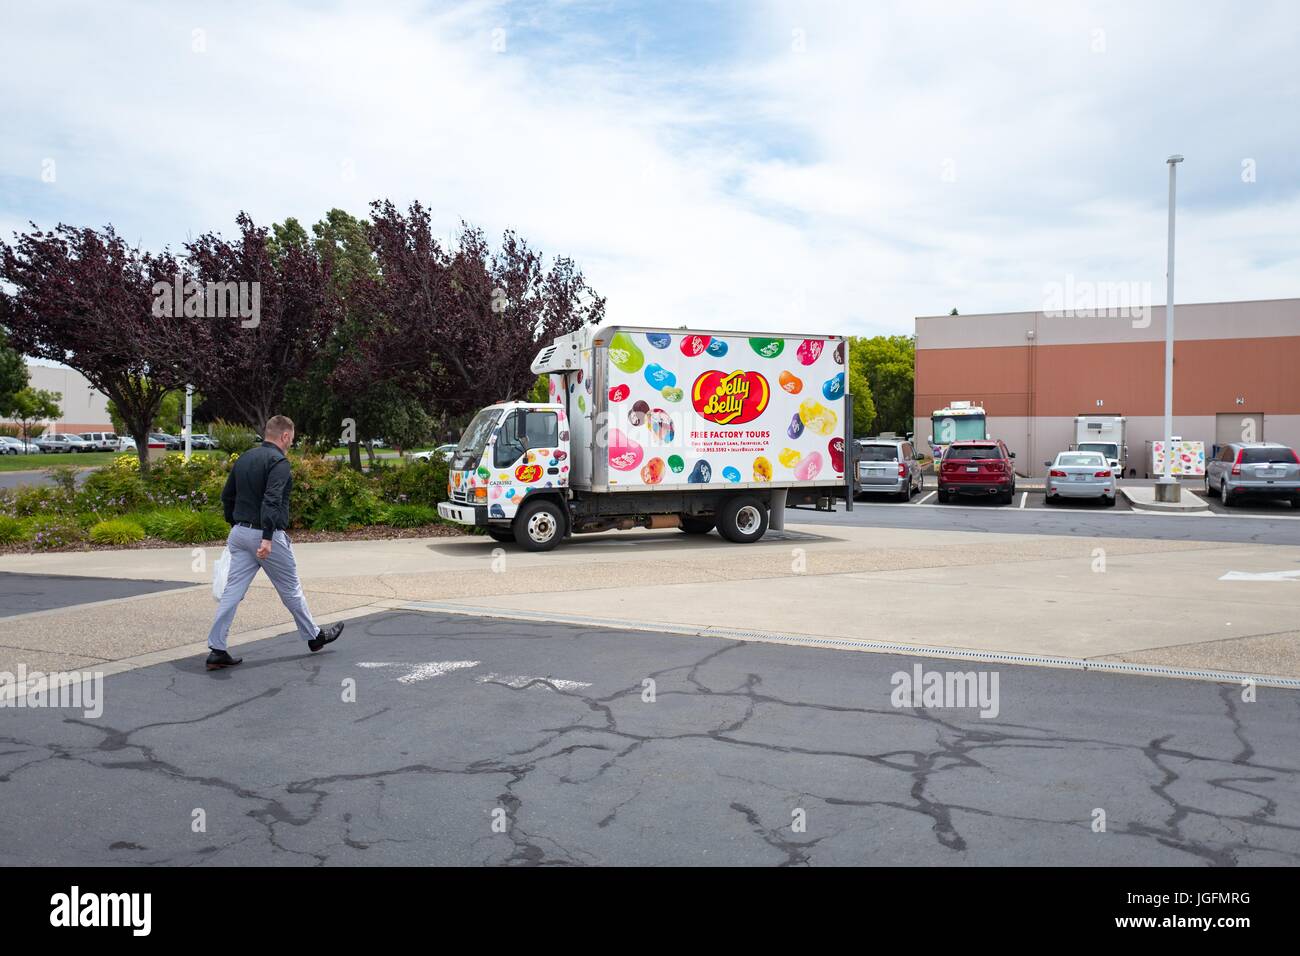 Un homme passe devant un camion de livraison à l'usine Jelly Belly jelly bean dans Fairfield, Californie, le 7 juin 2017. Banque D'Images